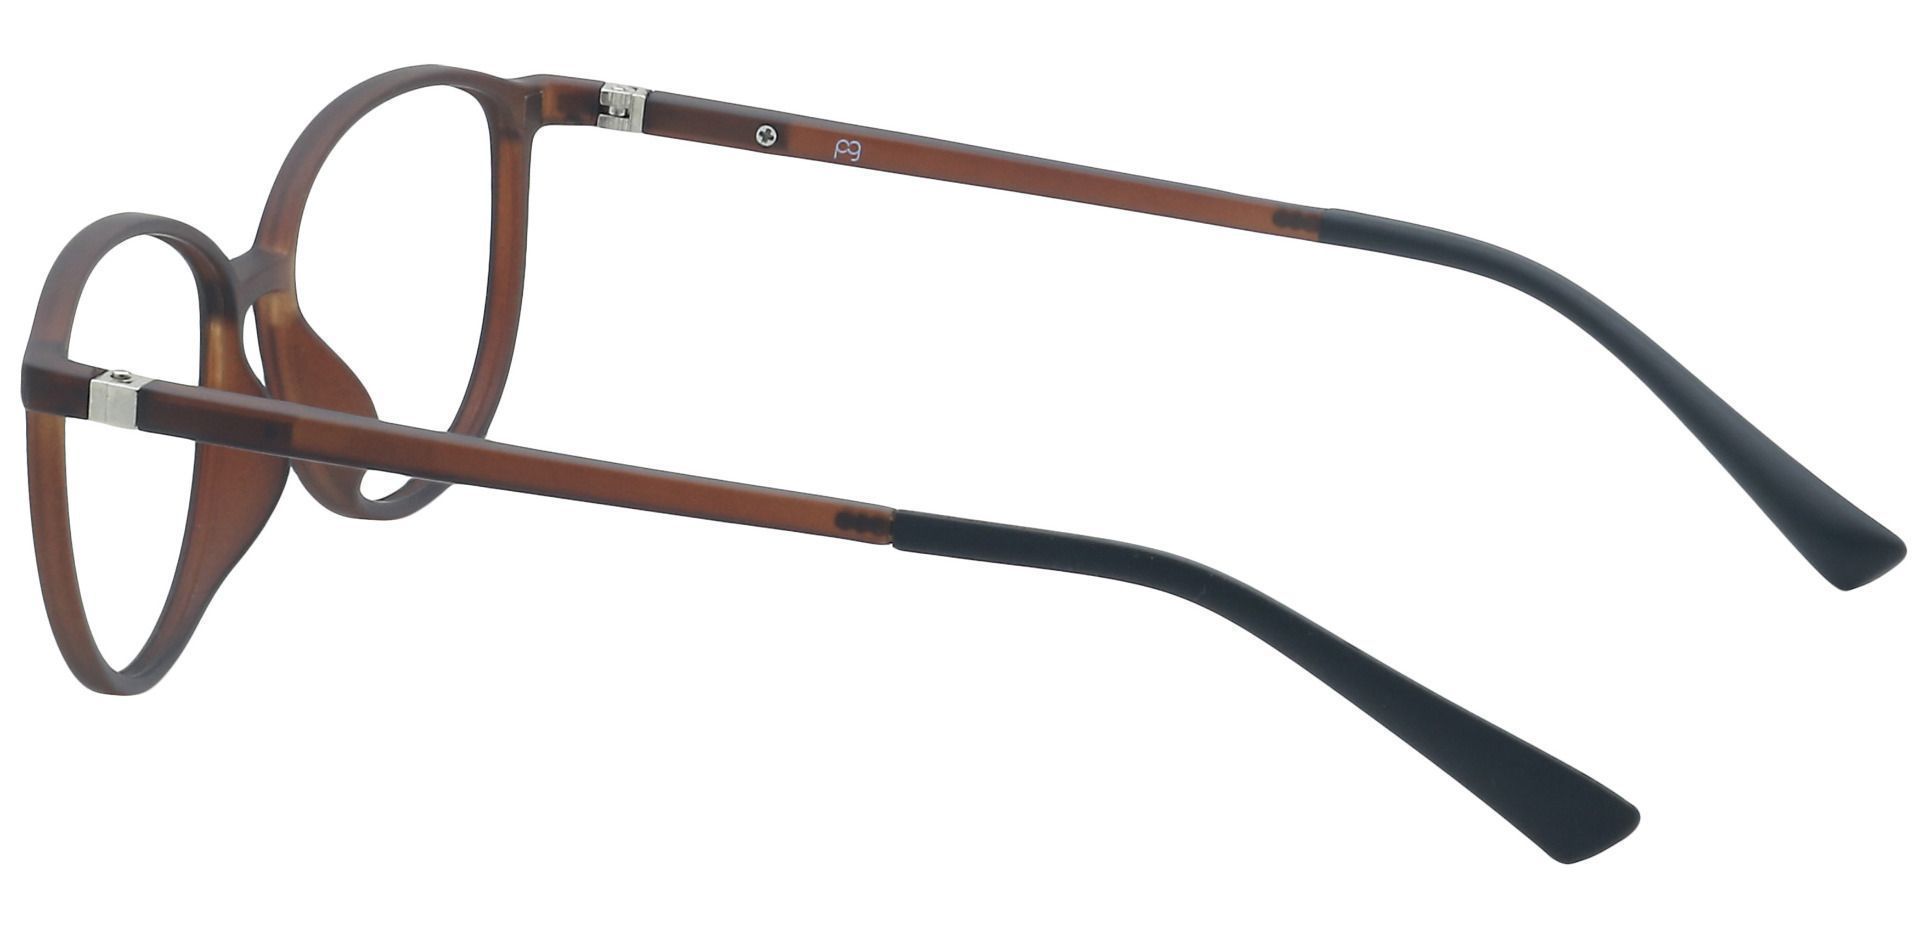 Melbourne Oval Eyeglasses Frame - Brown